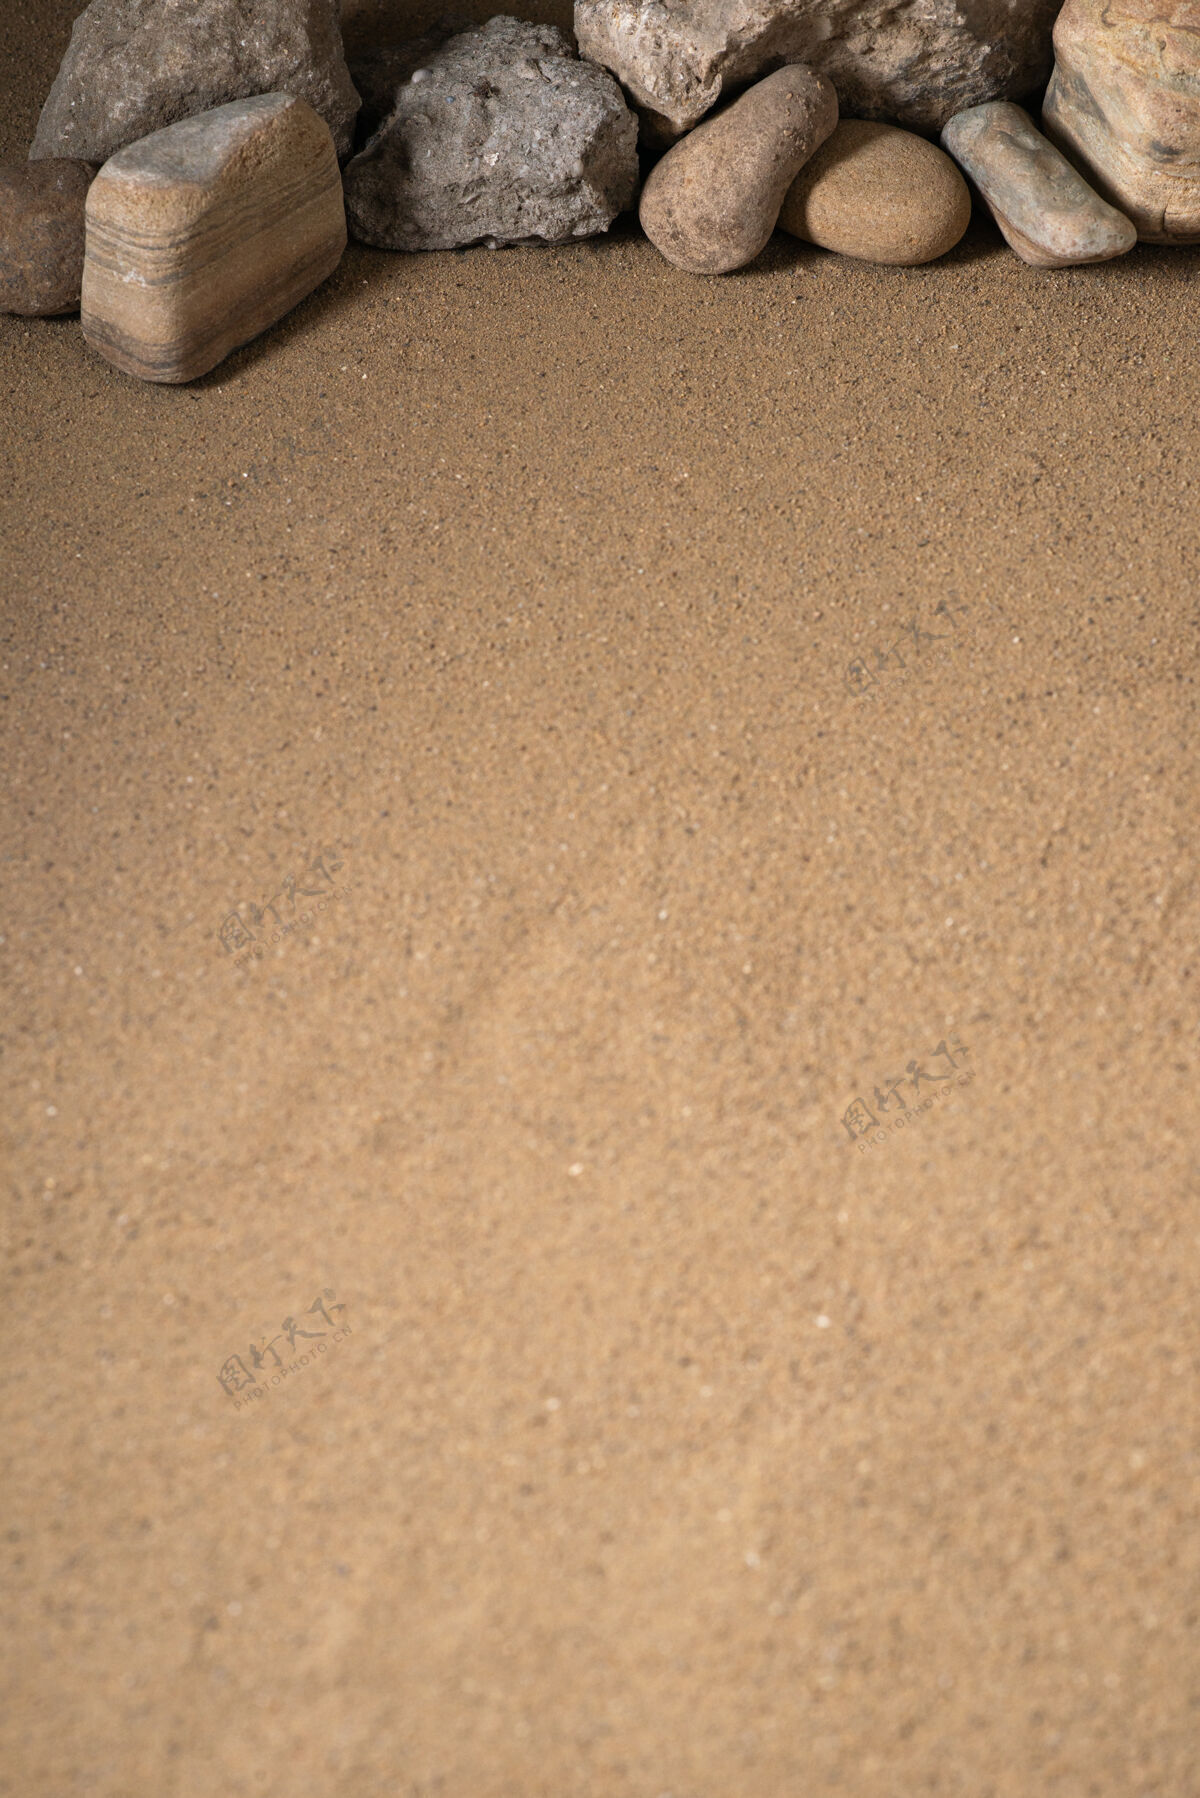 Fi不同的石头上的沙子死亡科幻质地泥土沙子